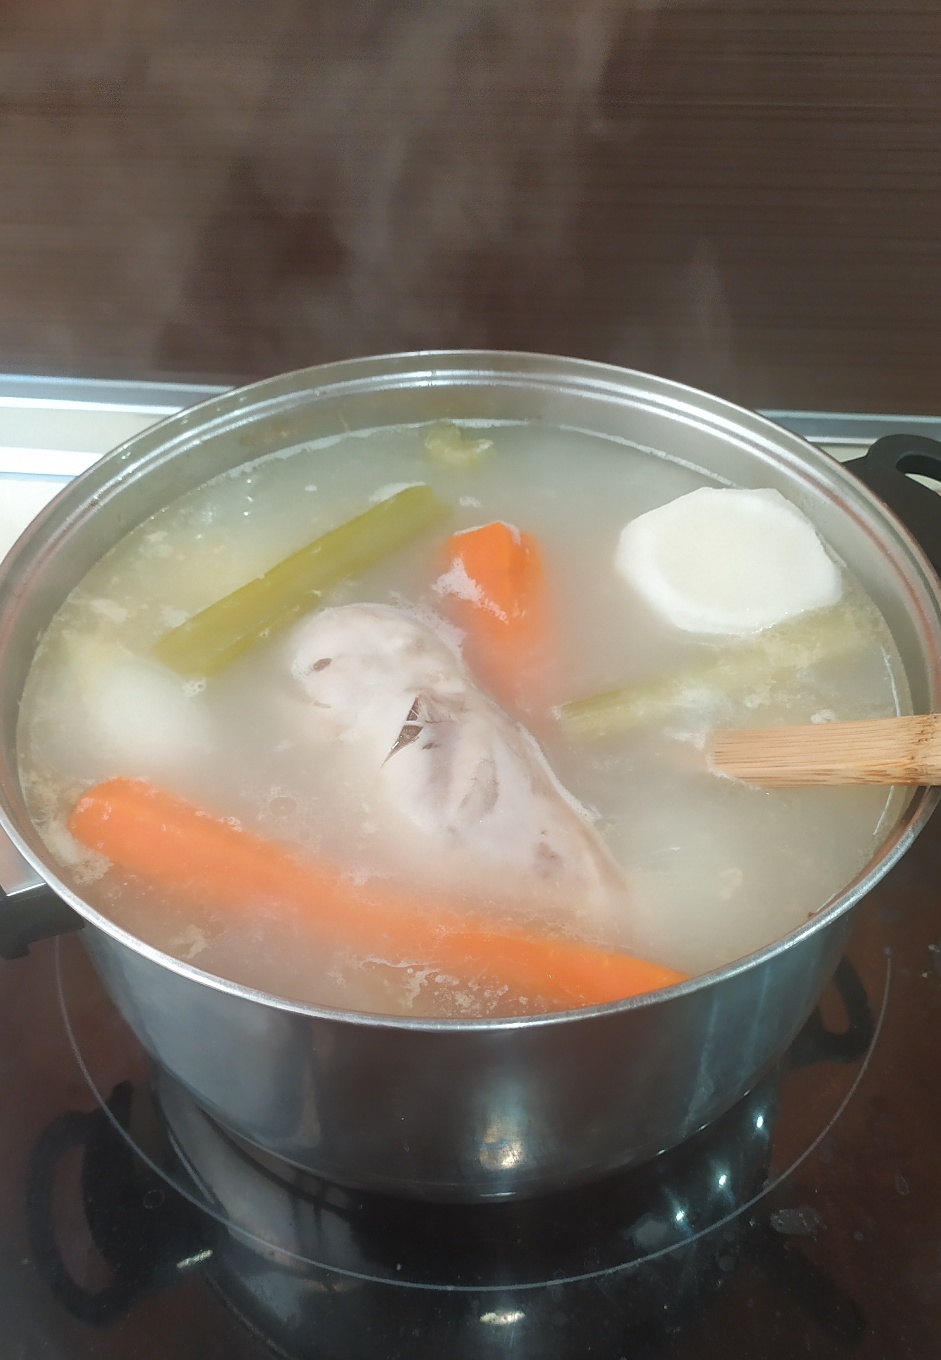 Caldo de pollo y verdurasStep 0